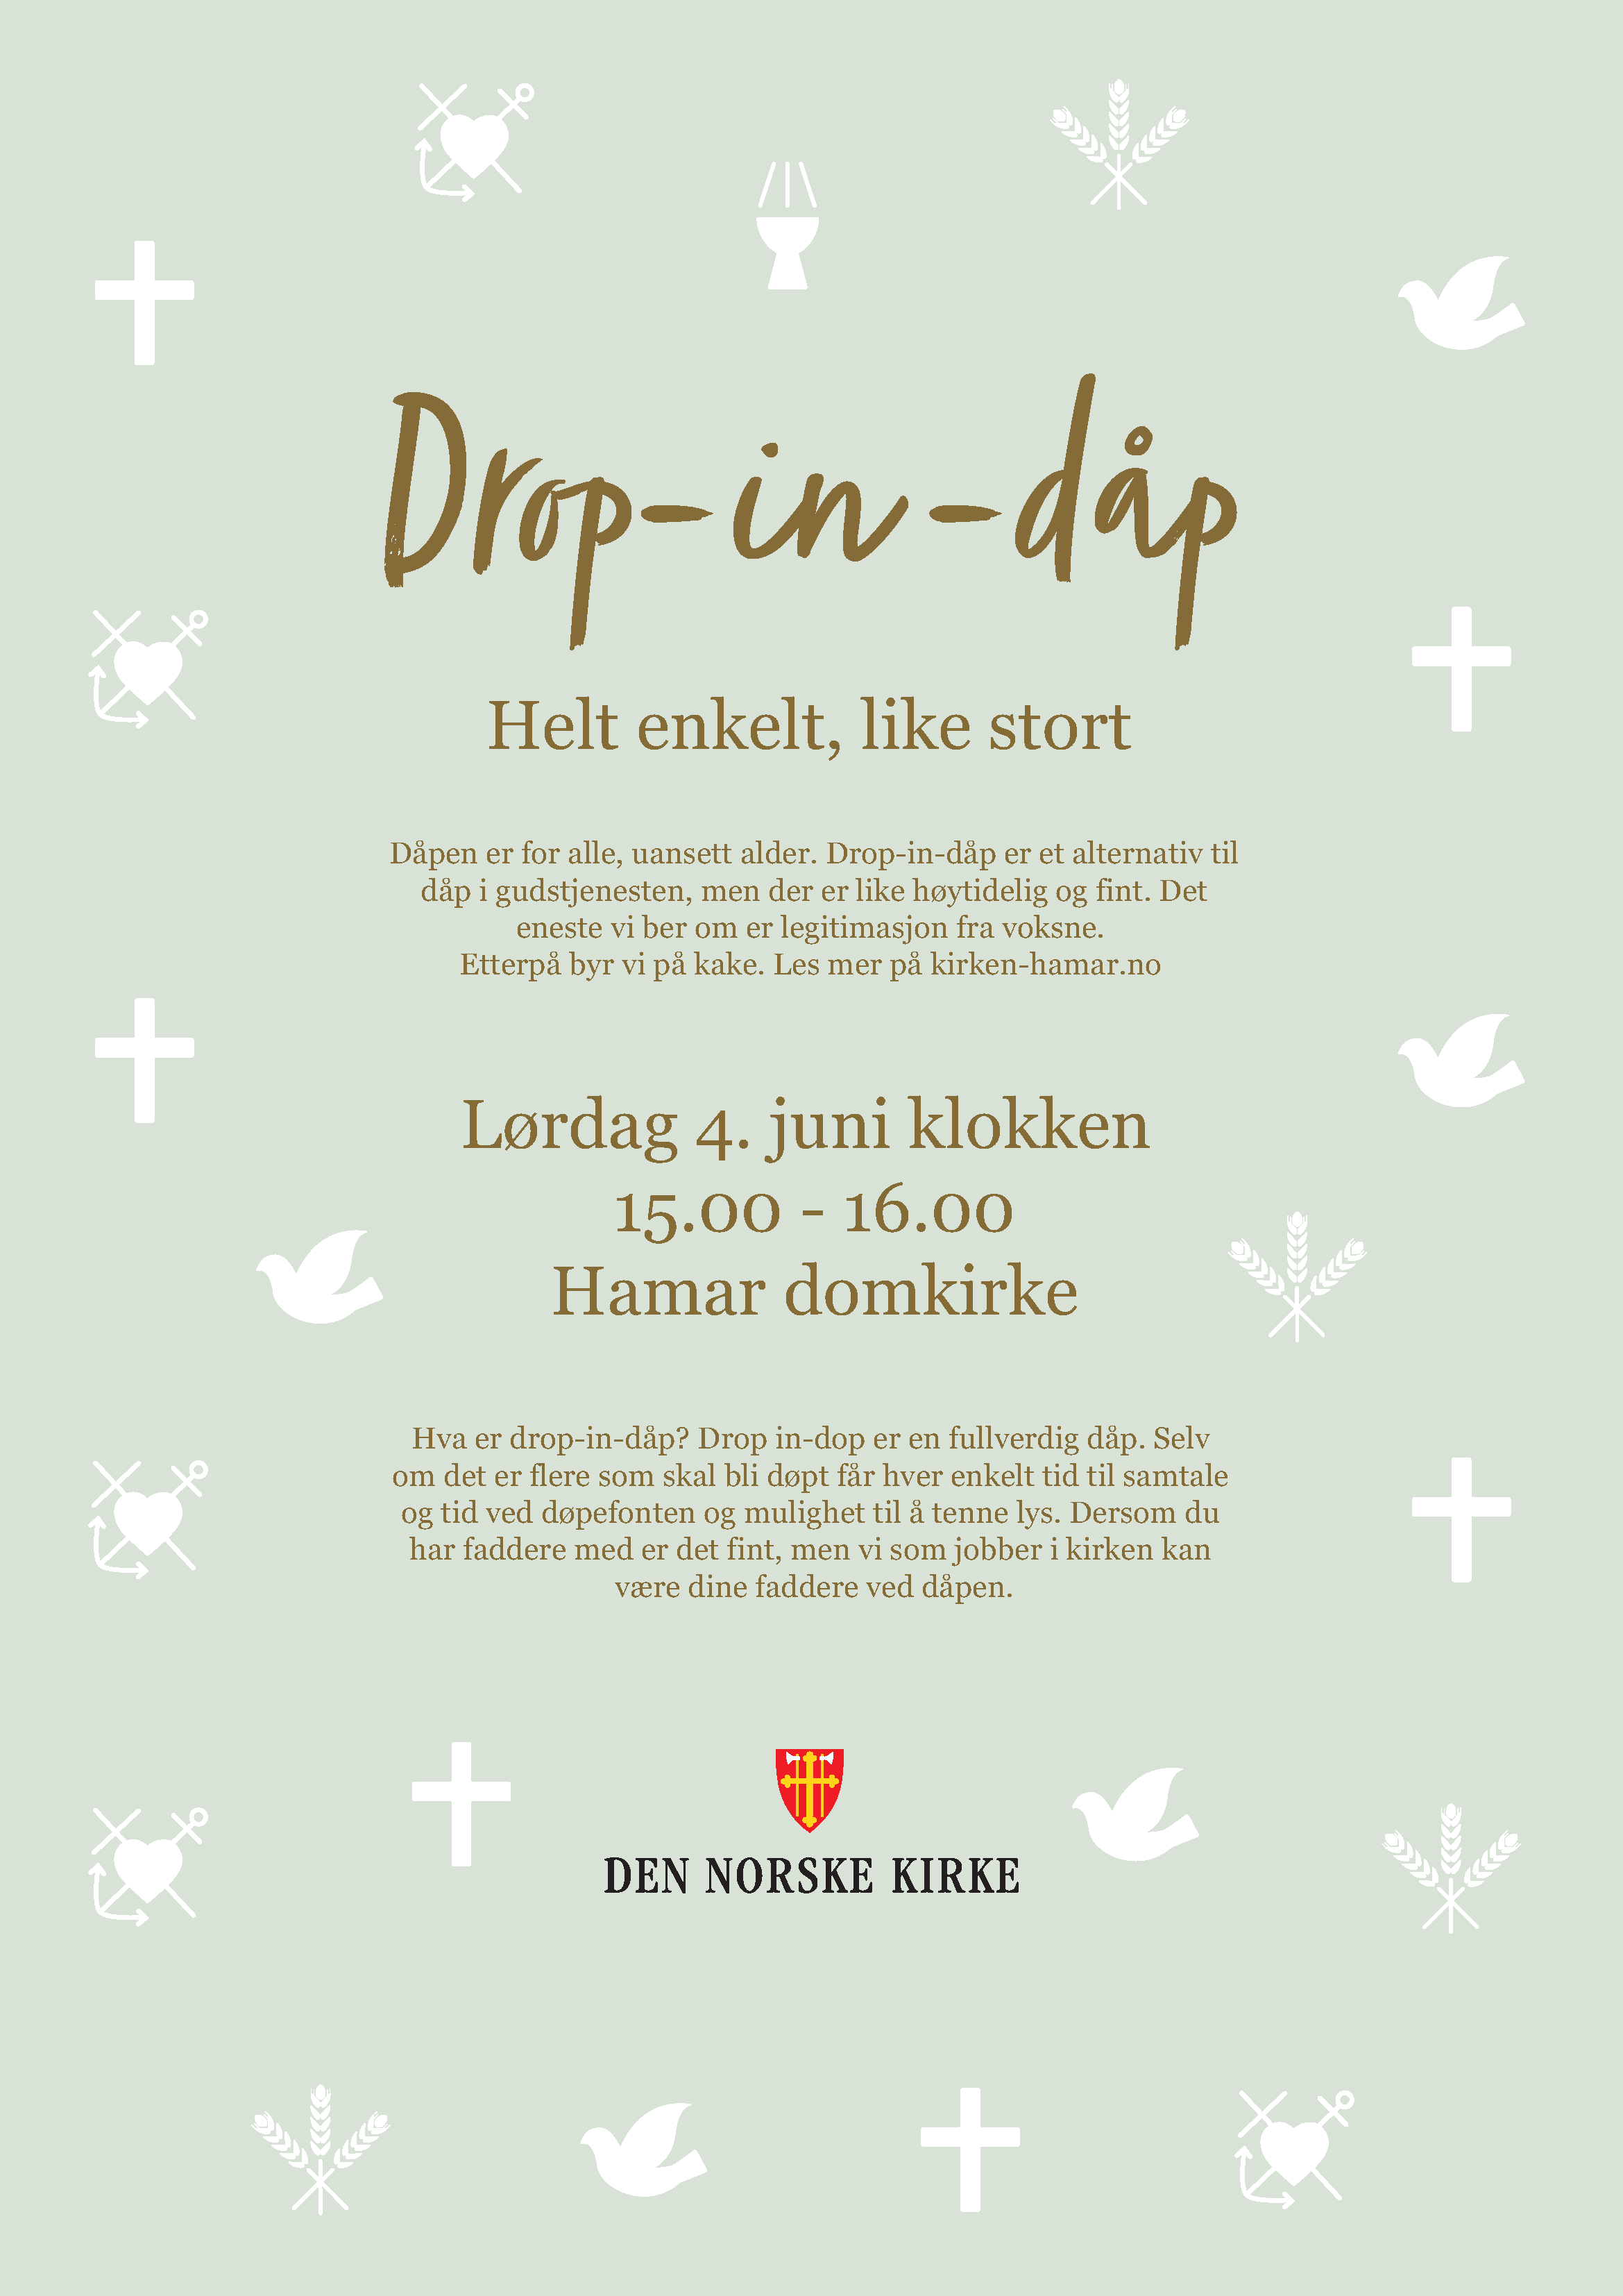 Plakat A3 med tekst bokmål (002).png